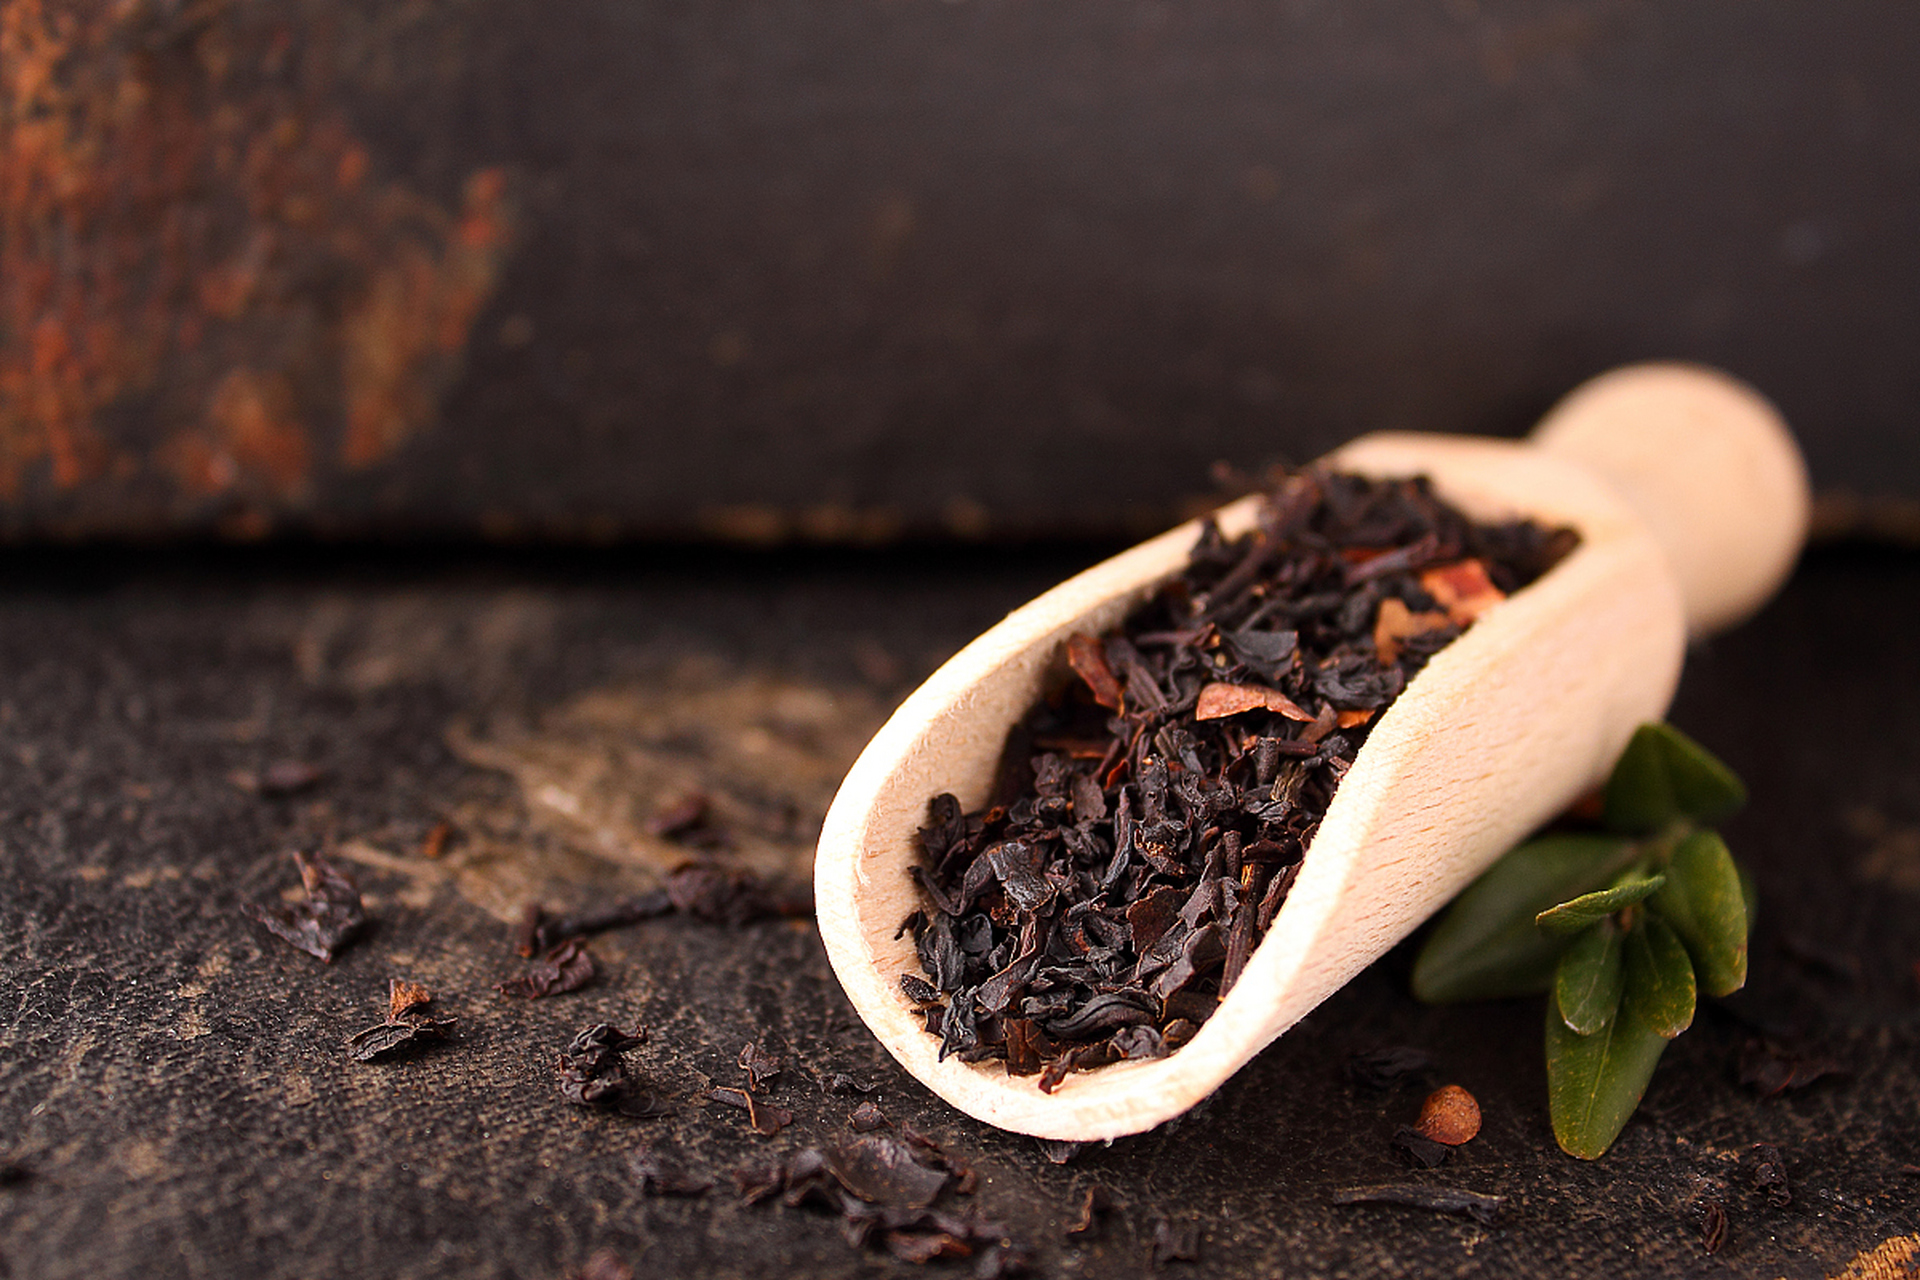 脾胃虚寒:黑茶是后发酵的茶类,通常咖啡因含量较少,适当喝不会刺激